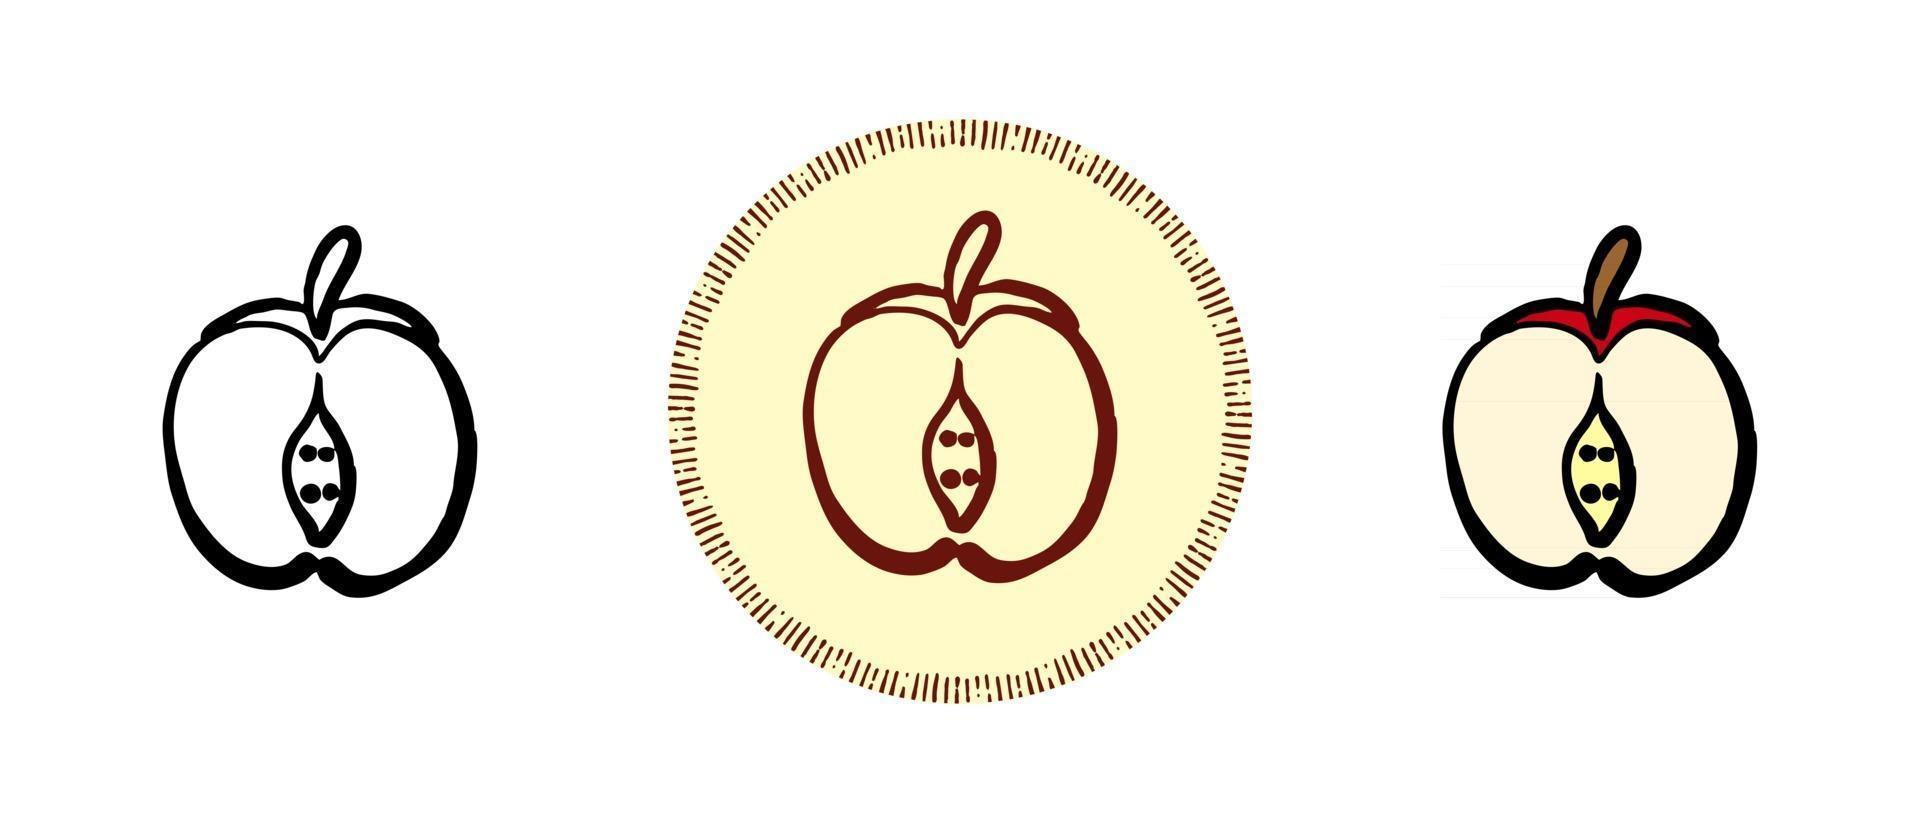 kontur och färg och retro symboler för ett klippt äpple vektor